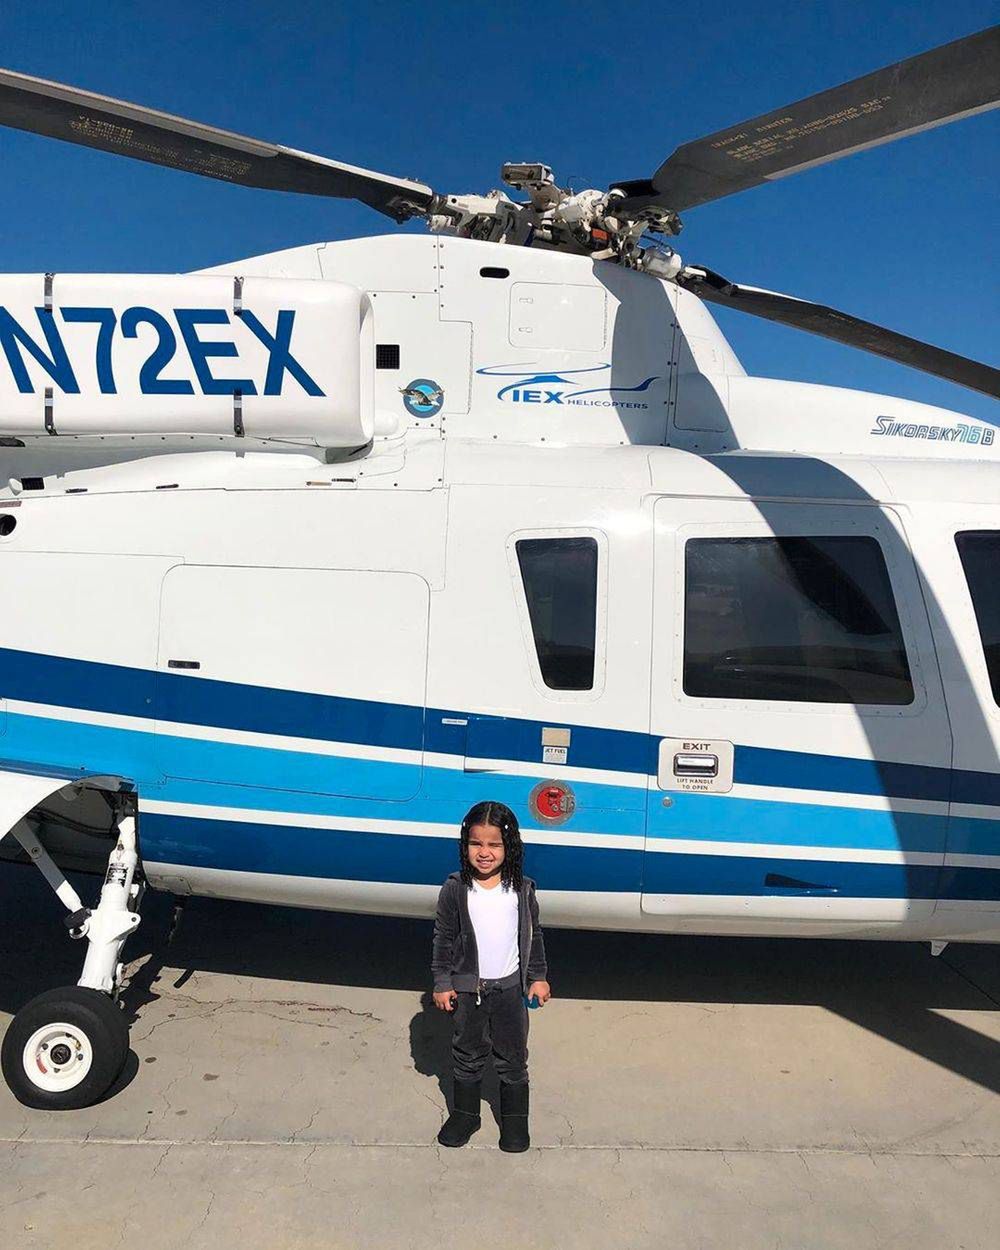 Dream Kardashian przed helikopterem, Instagram